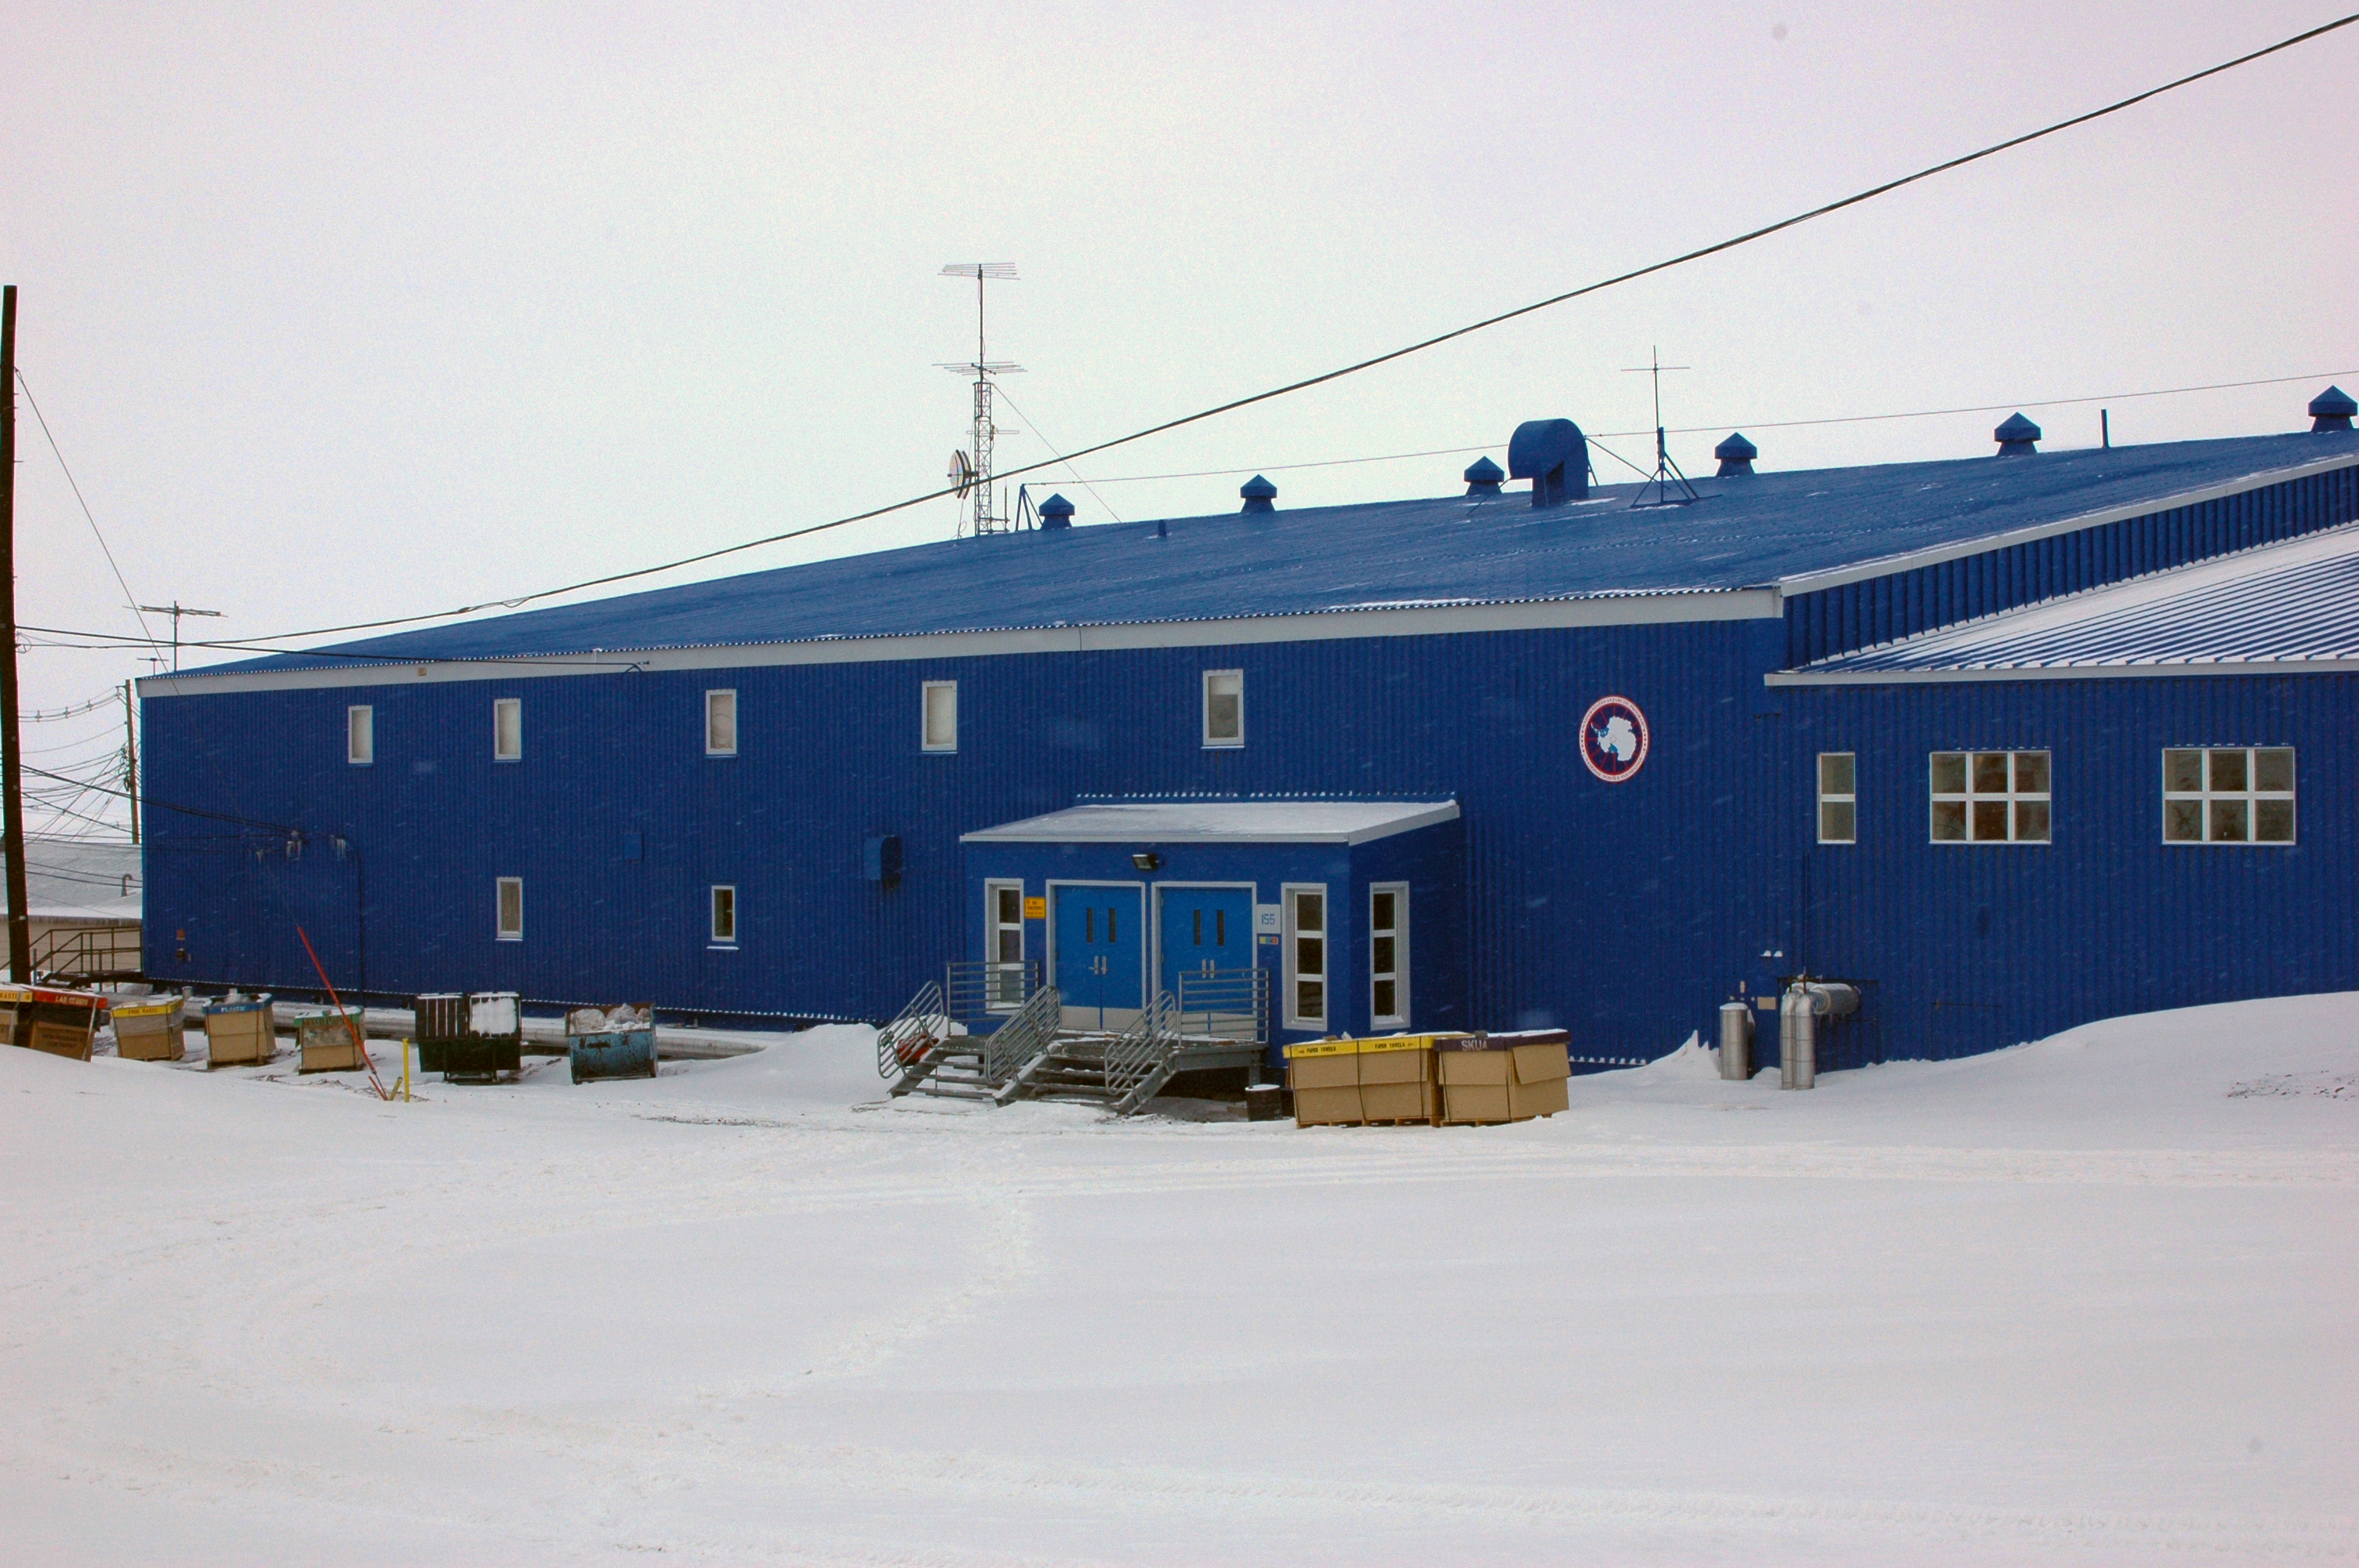 A blue building.